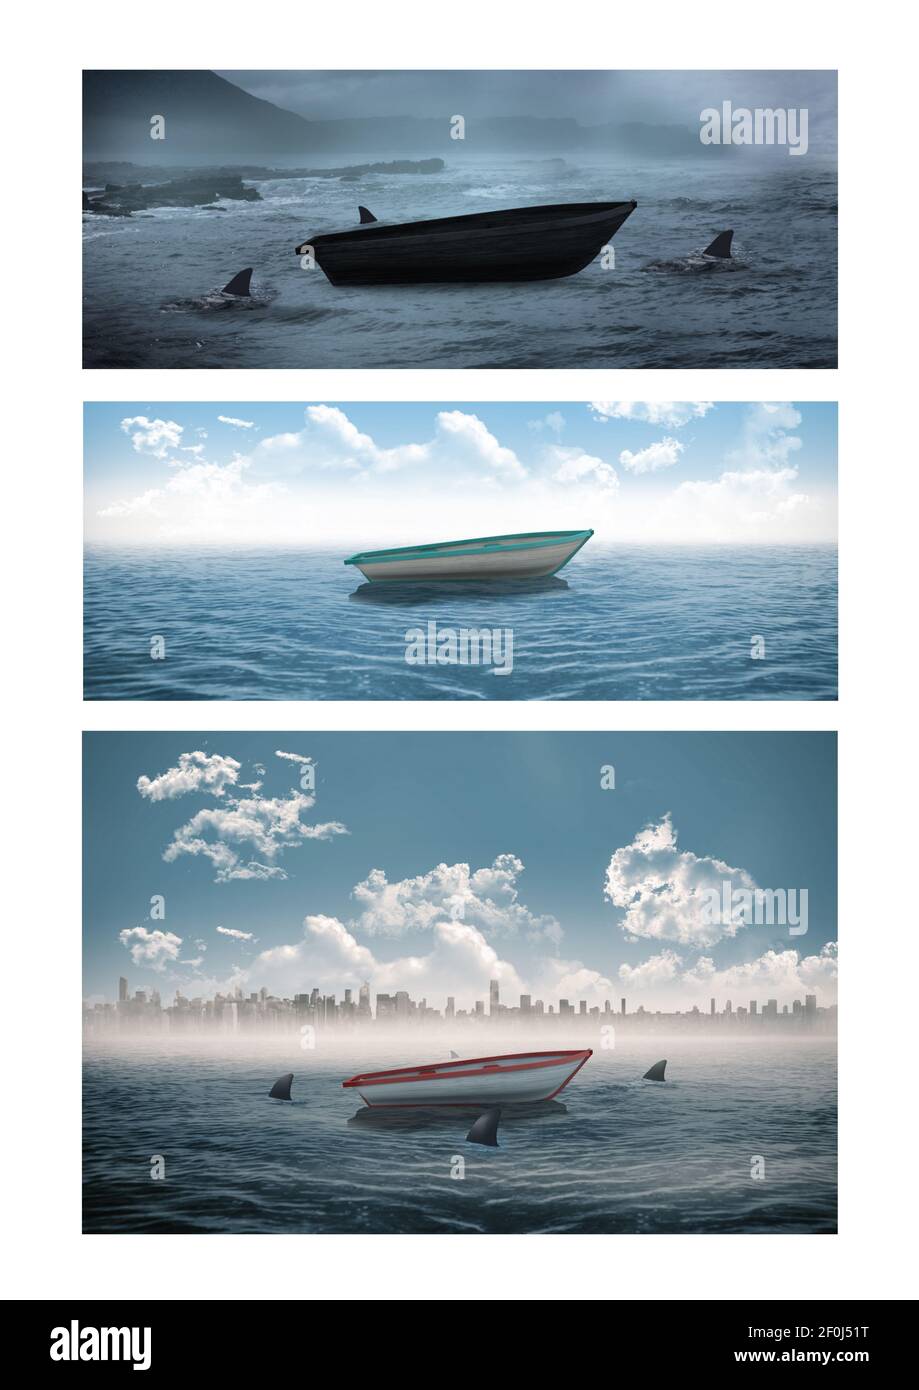 Composizione di tre foto con barca al mare Foto Stock